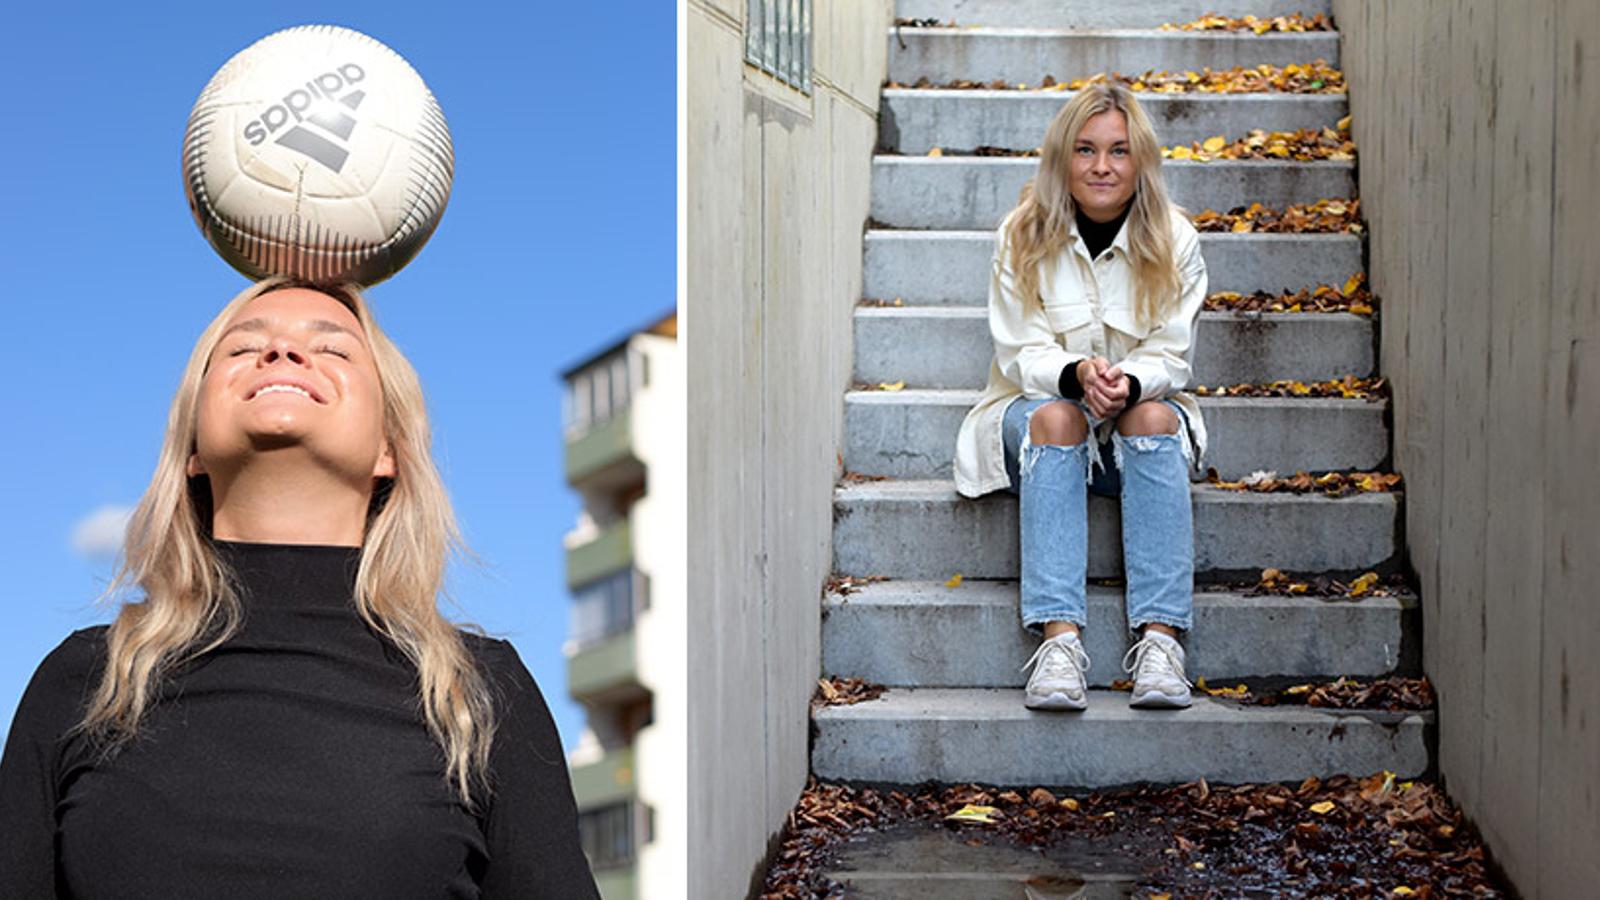 Till vänster: Bild på Julia Adolfsson som balanserar en fotboll på huvudet. Till höger: Bild på Julia Adolfsson som sitter i en trappa utomhus och kollar mot kameran.